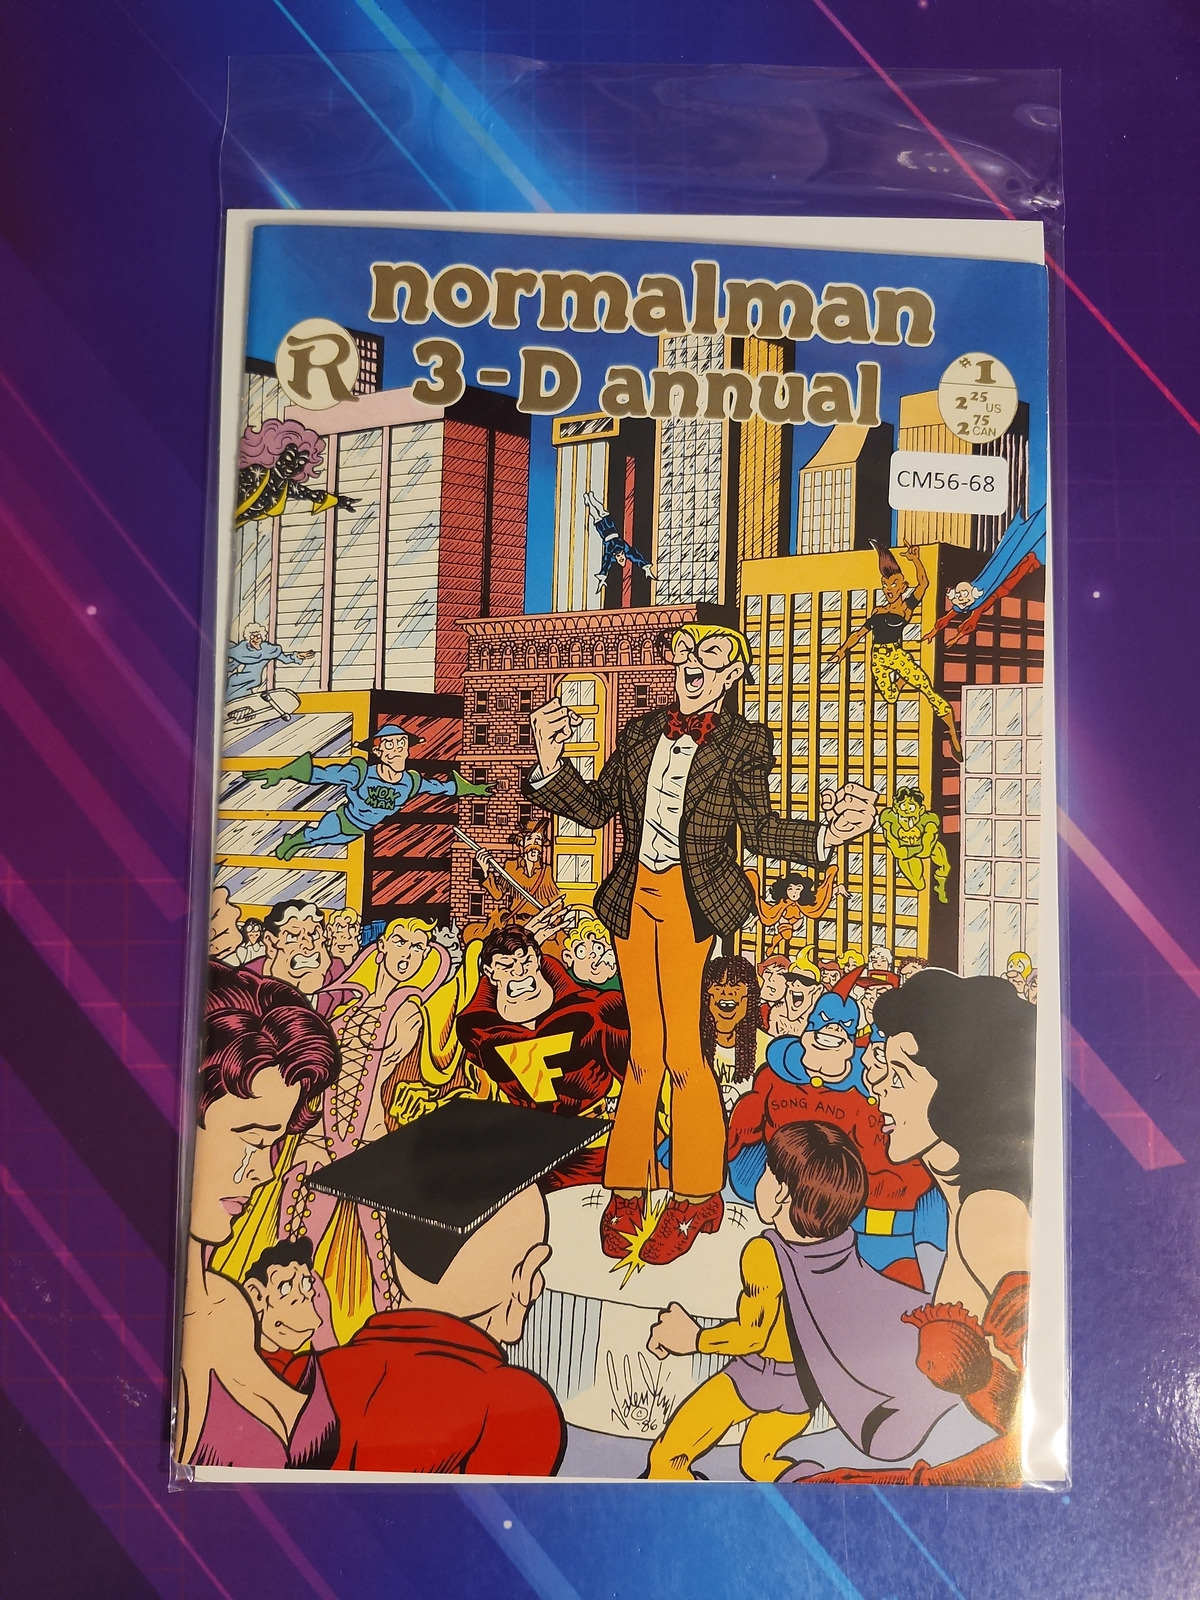 NORMALMAN #1 9.2 RENEGADE PRESS ANNUAL BOOK CM56-68